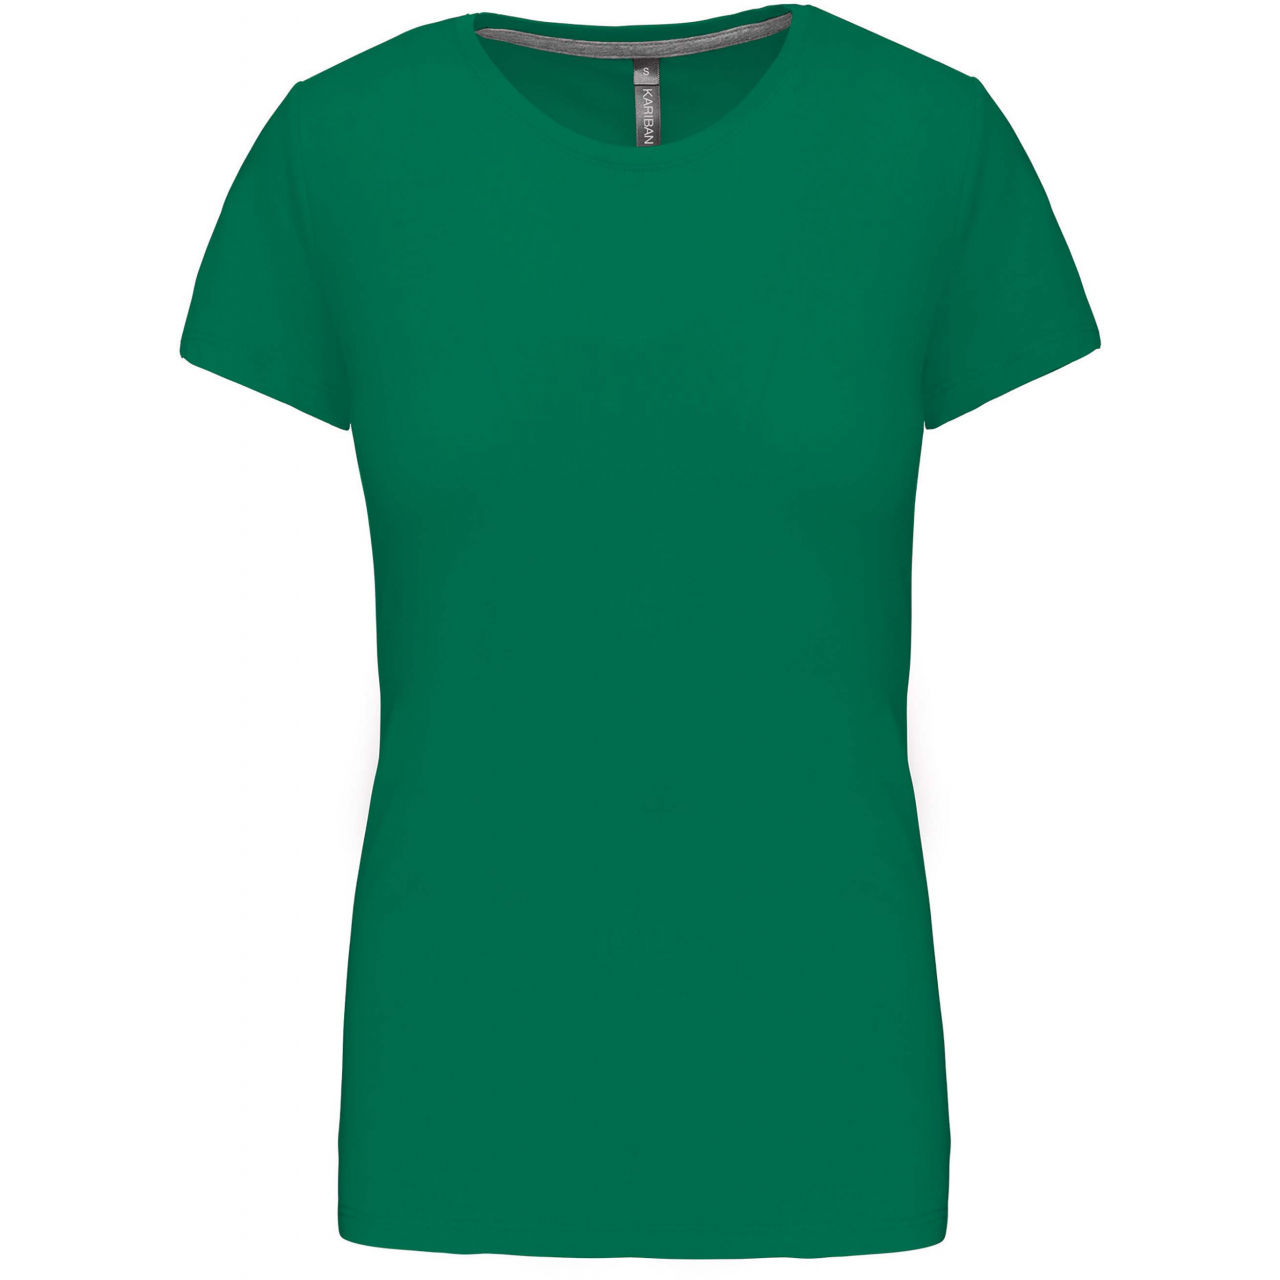 Dámské tričko Kariban s krátkým rukávem - zelené, S